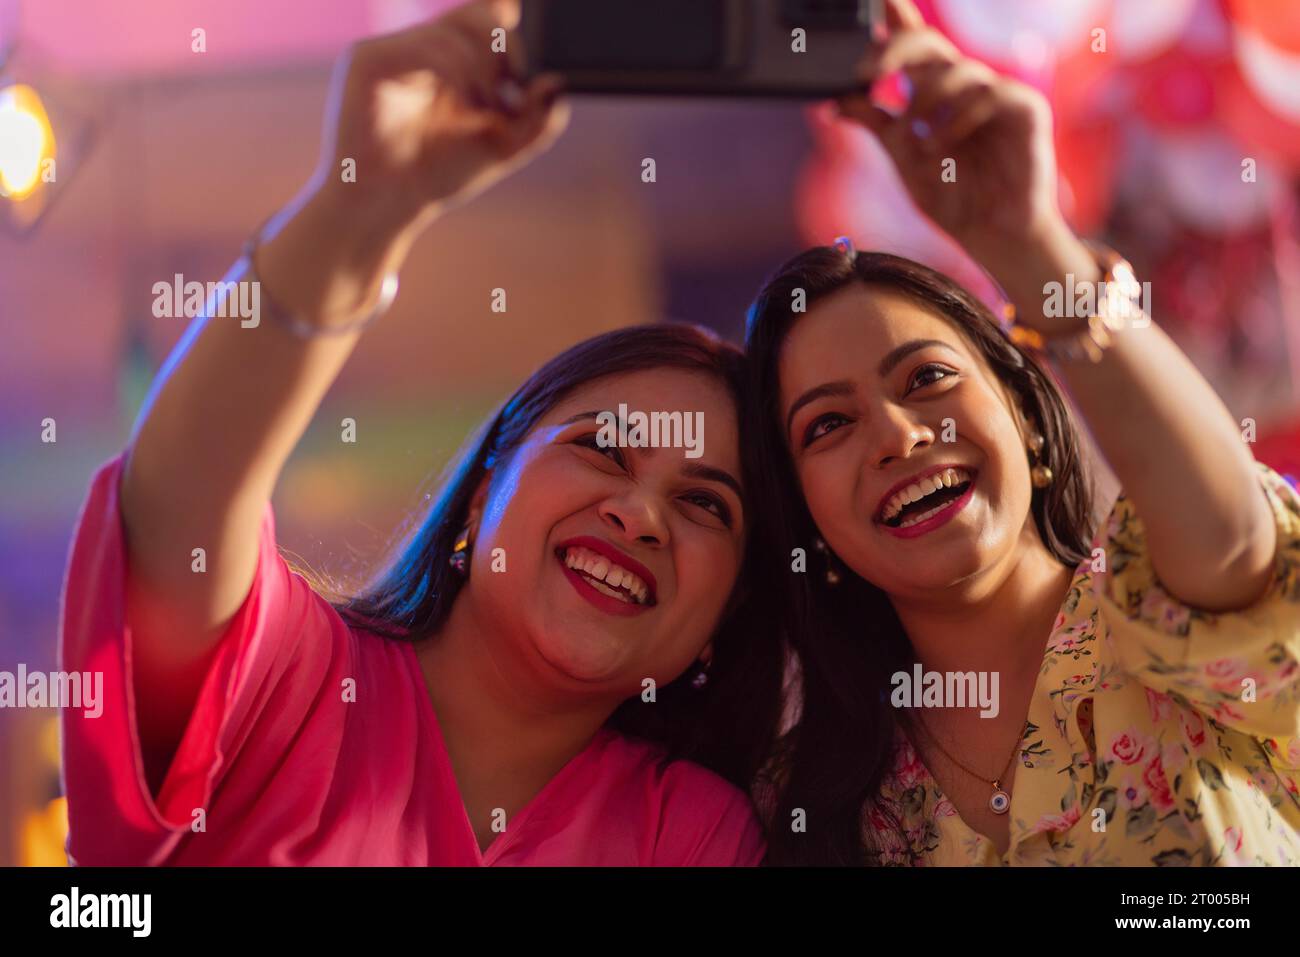 Women taking selfie on mobile phone at restaurant Stock Photo